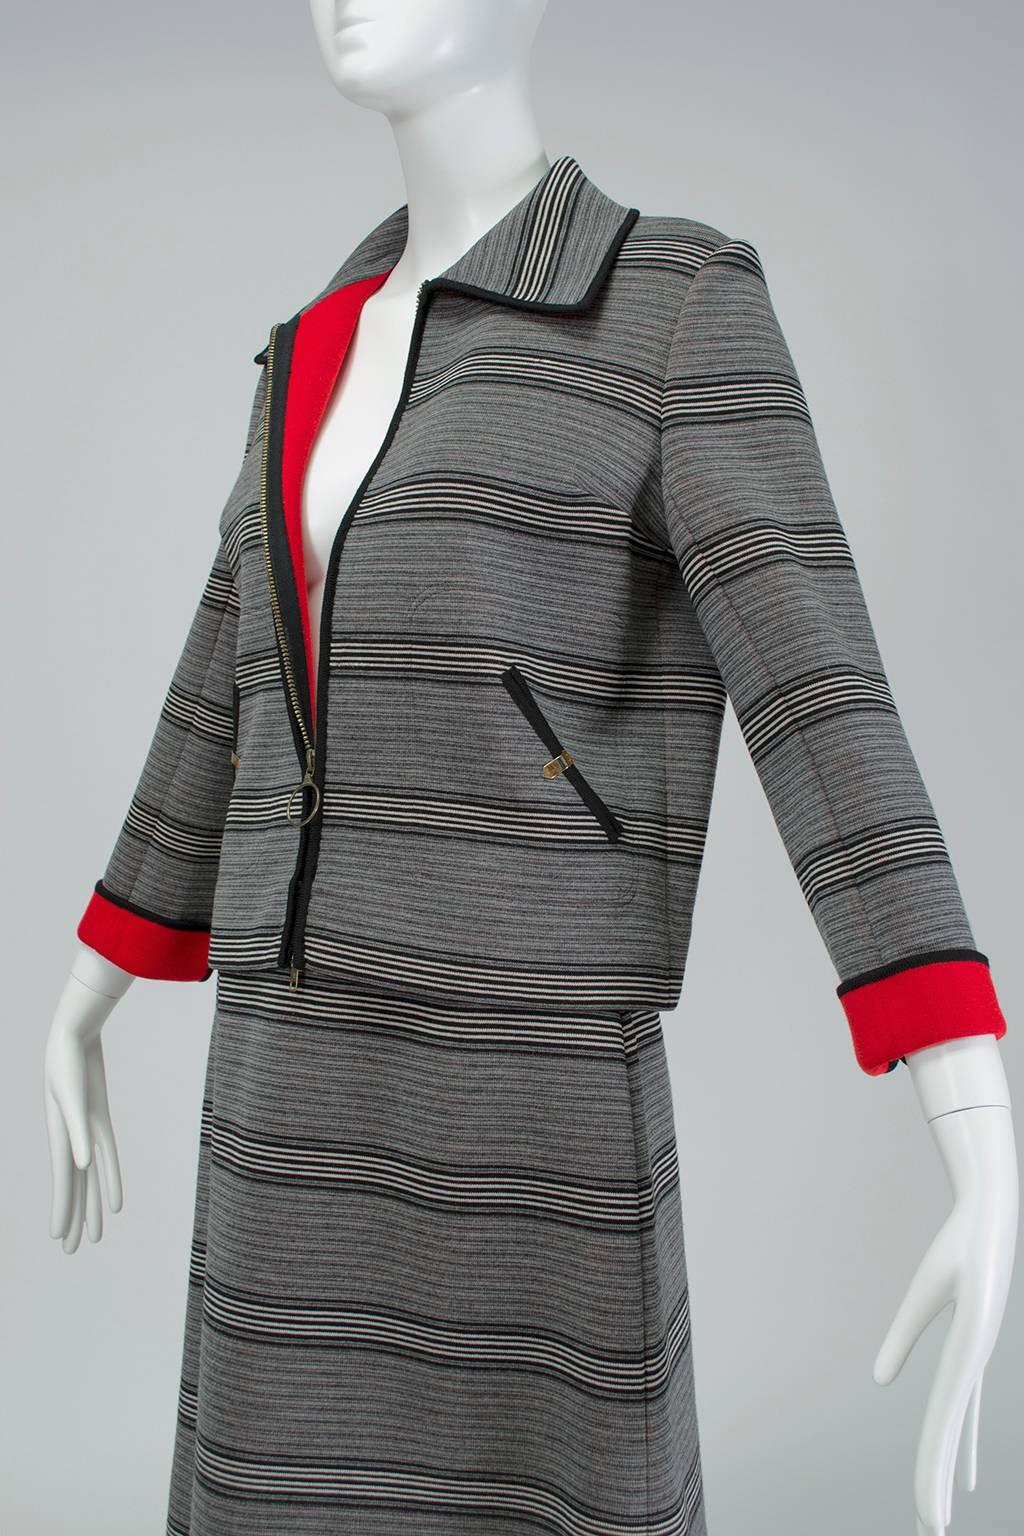 Mod Italian Dolce Vita Black and Red Stripe A-Line Wool Vespa Suit- M, 1960s Pour femmes en vente